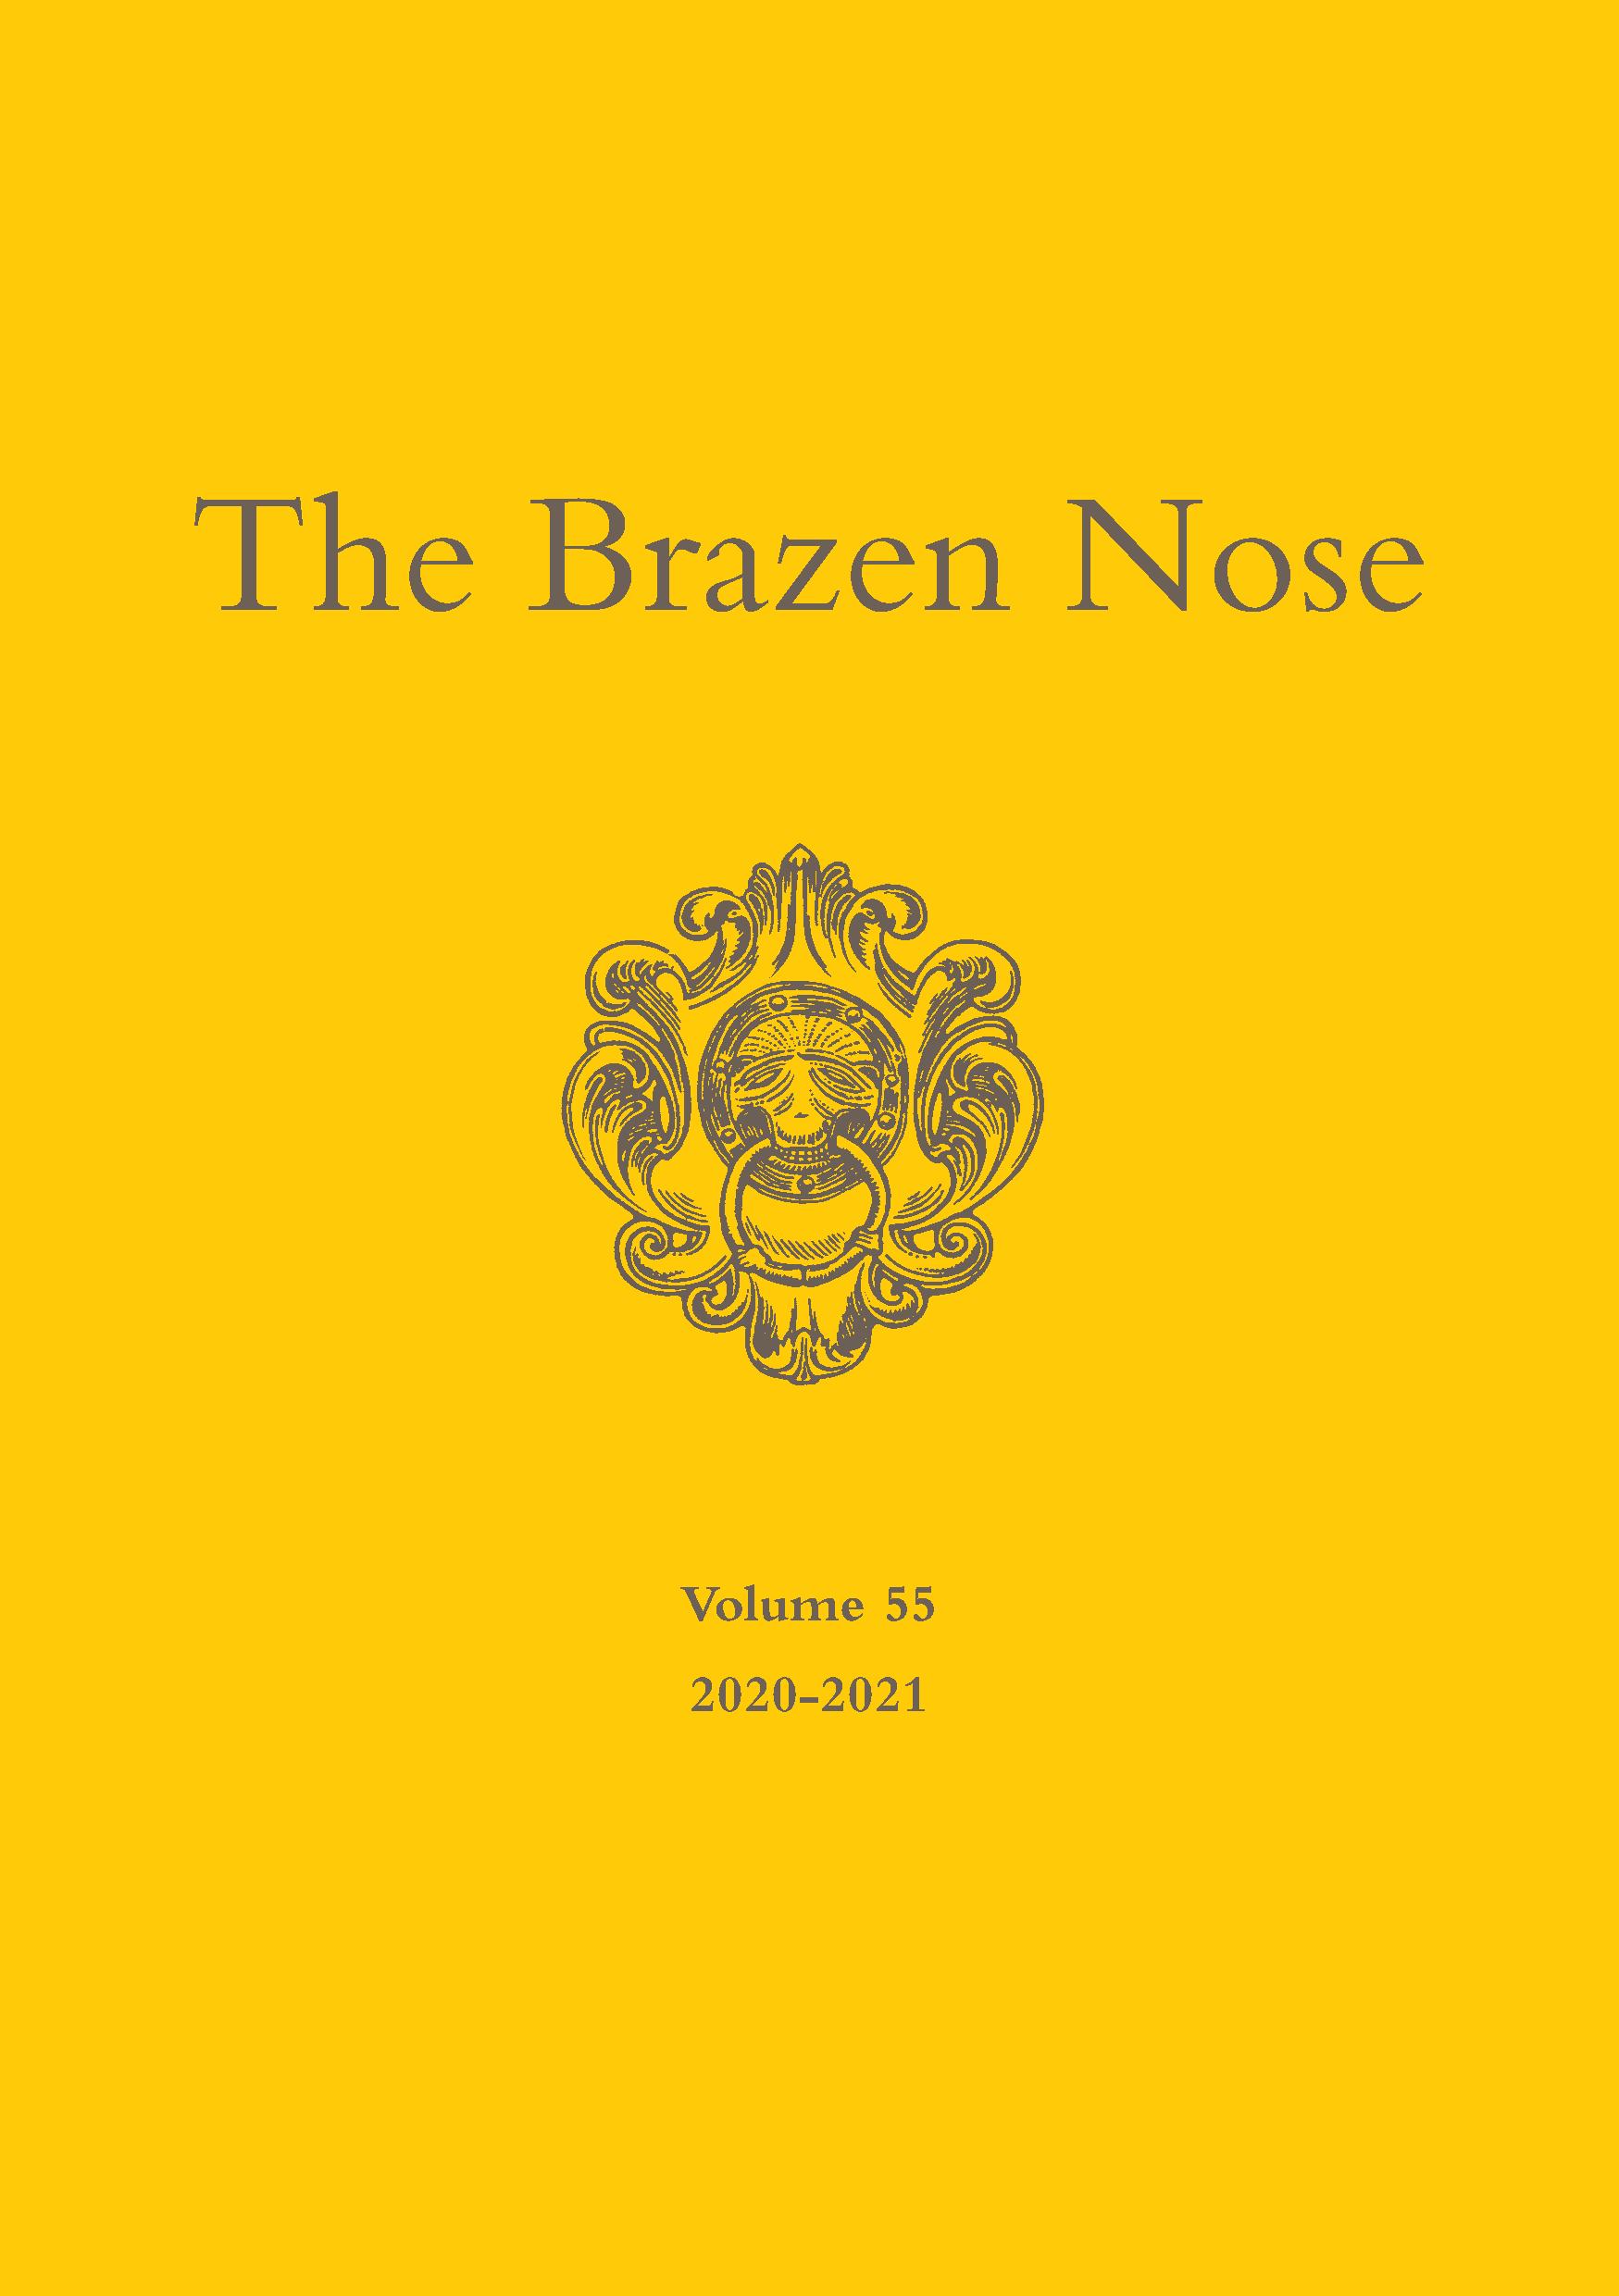 Brazen Nose Vol 55 2020-2021 Cover page